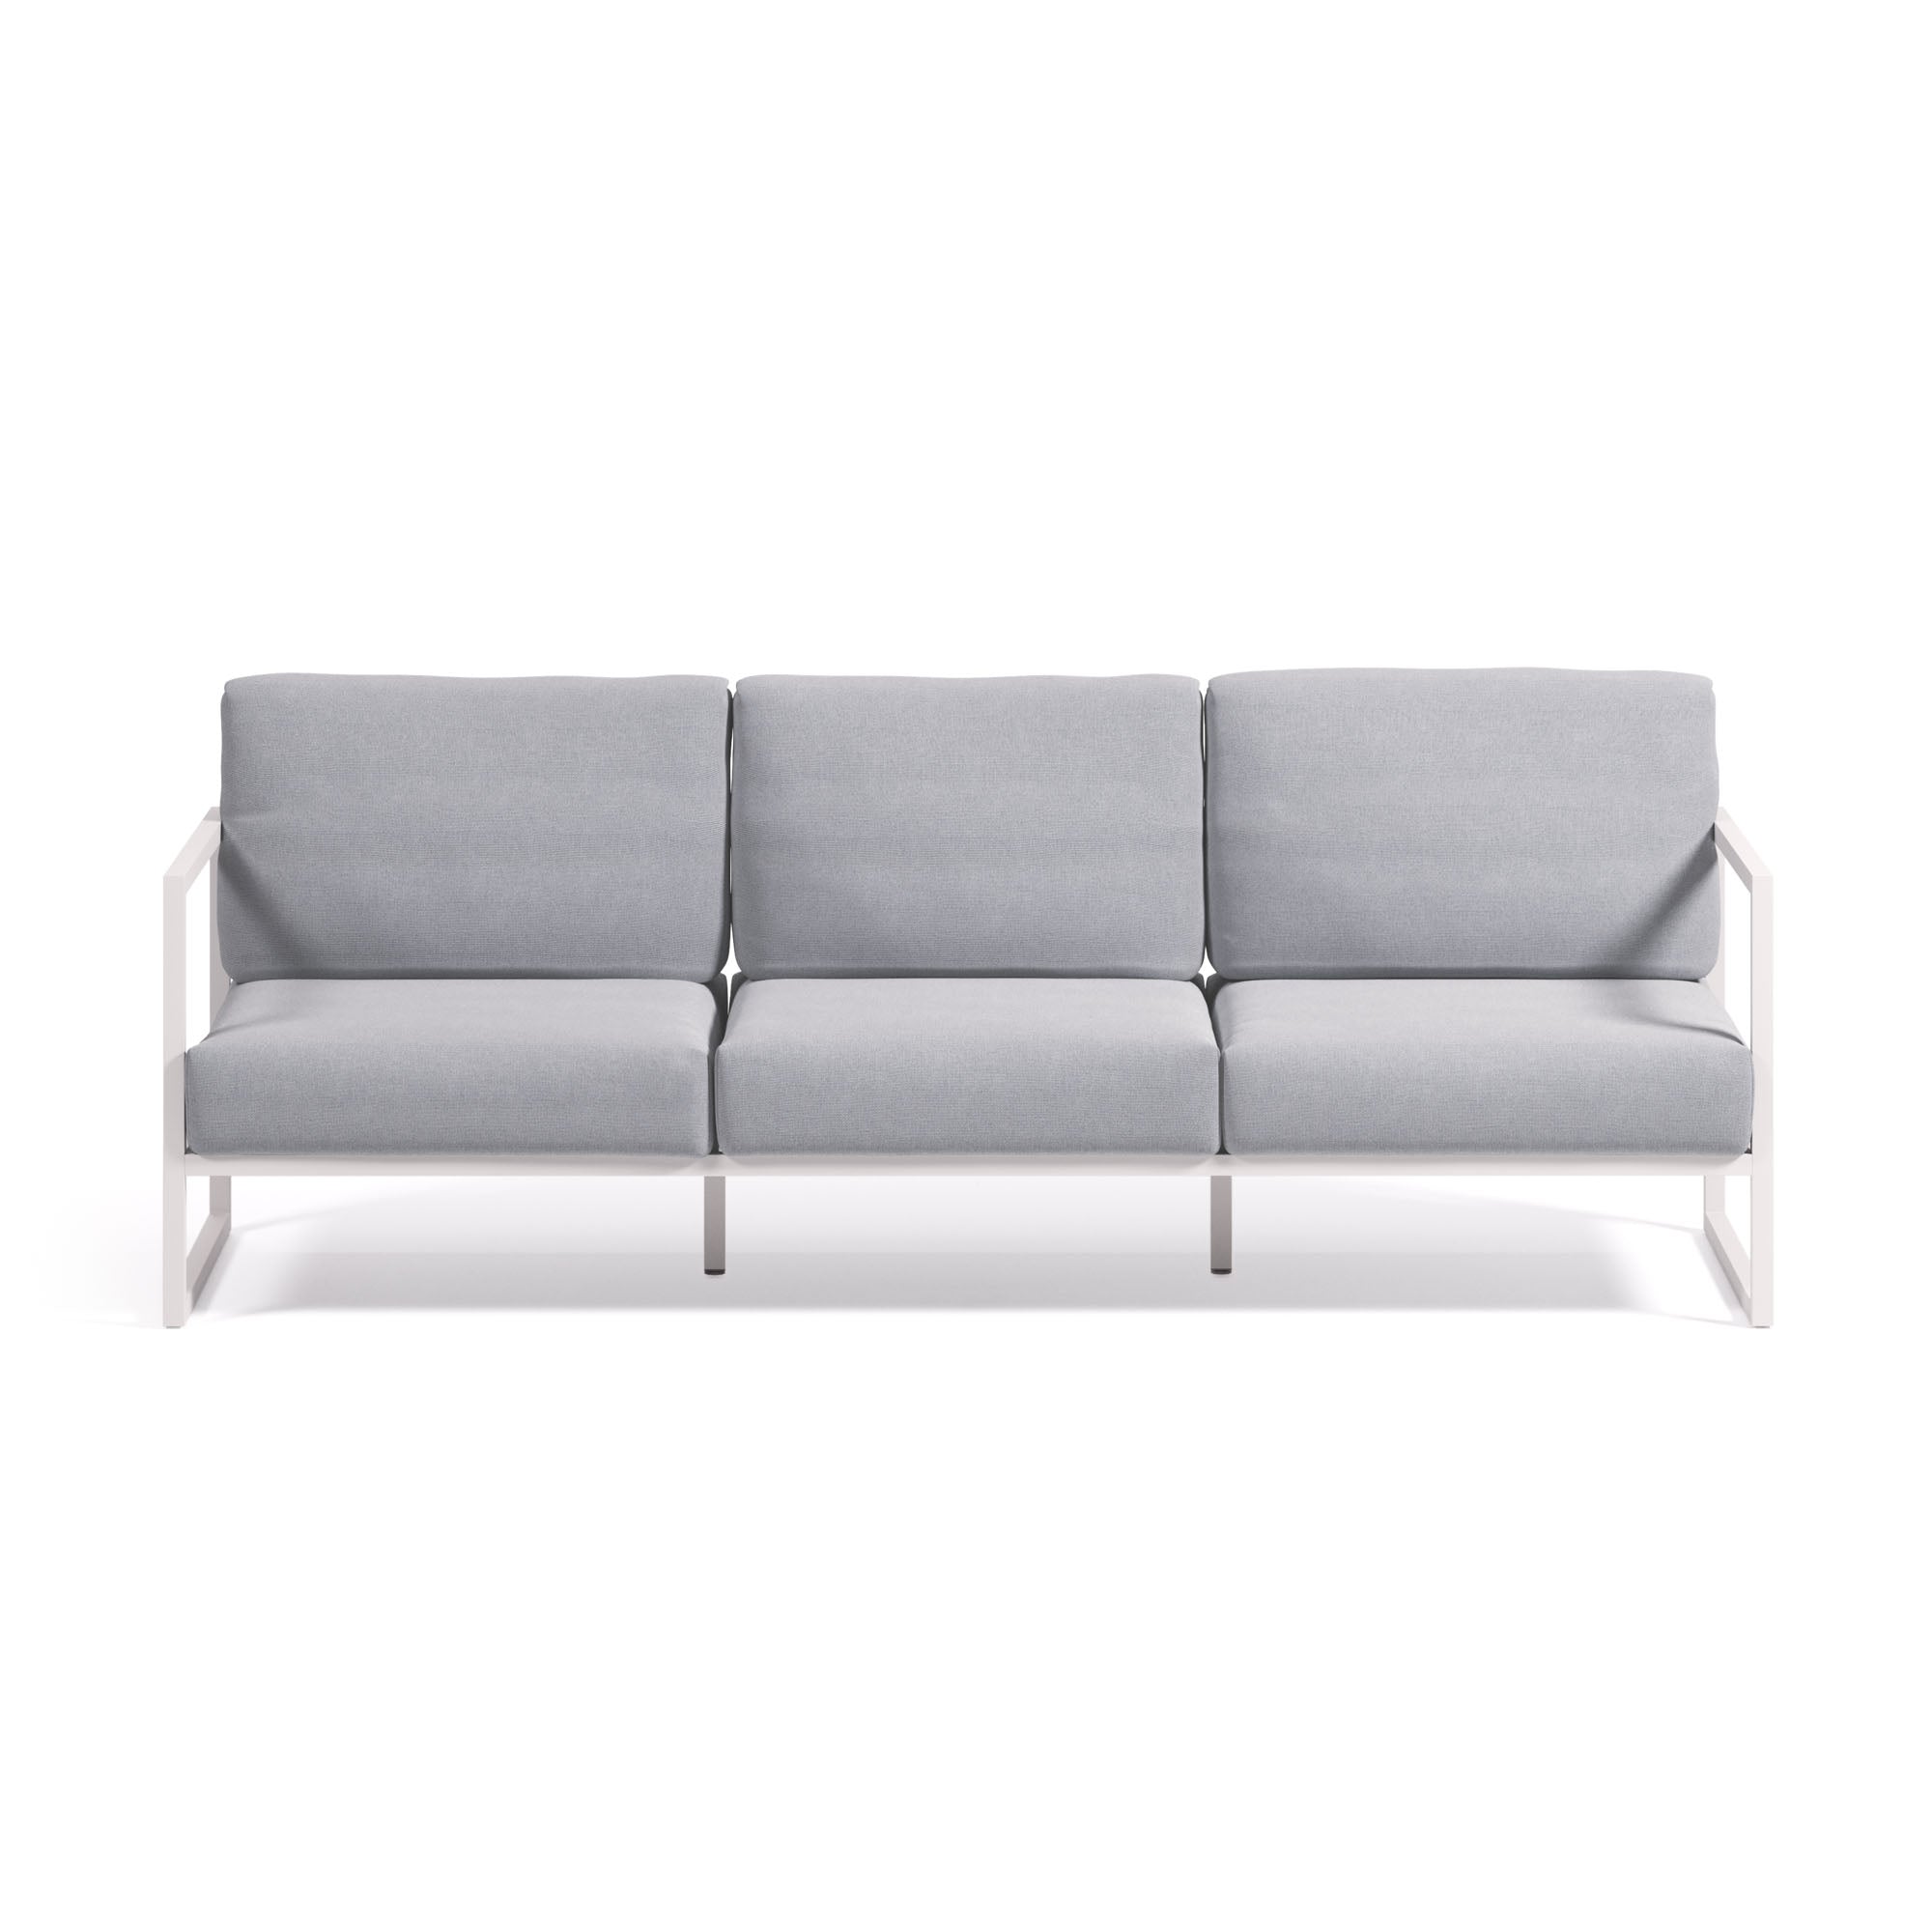 Comova 100% kültéri 3 személyes kanapé kék és fehér alumíniumból, 222 cm, 222 cm